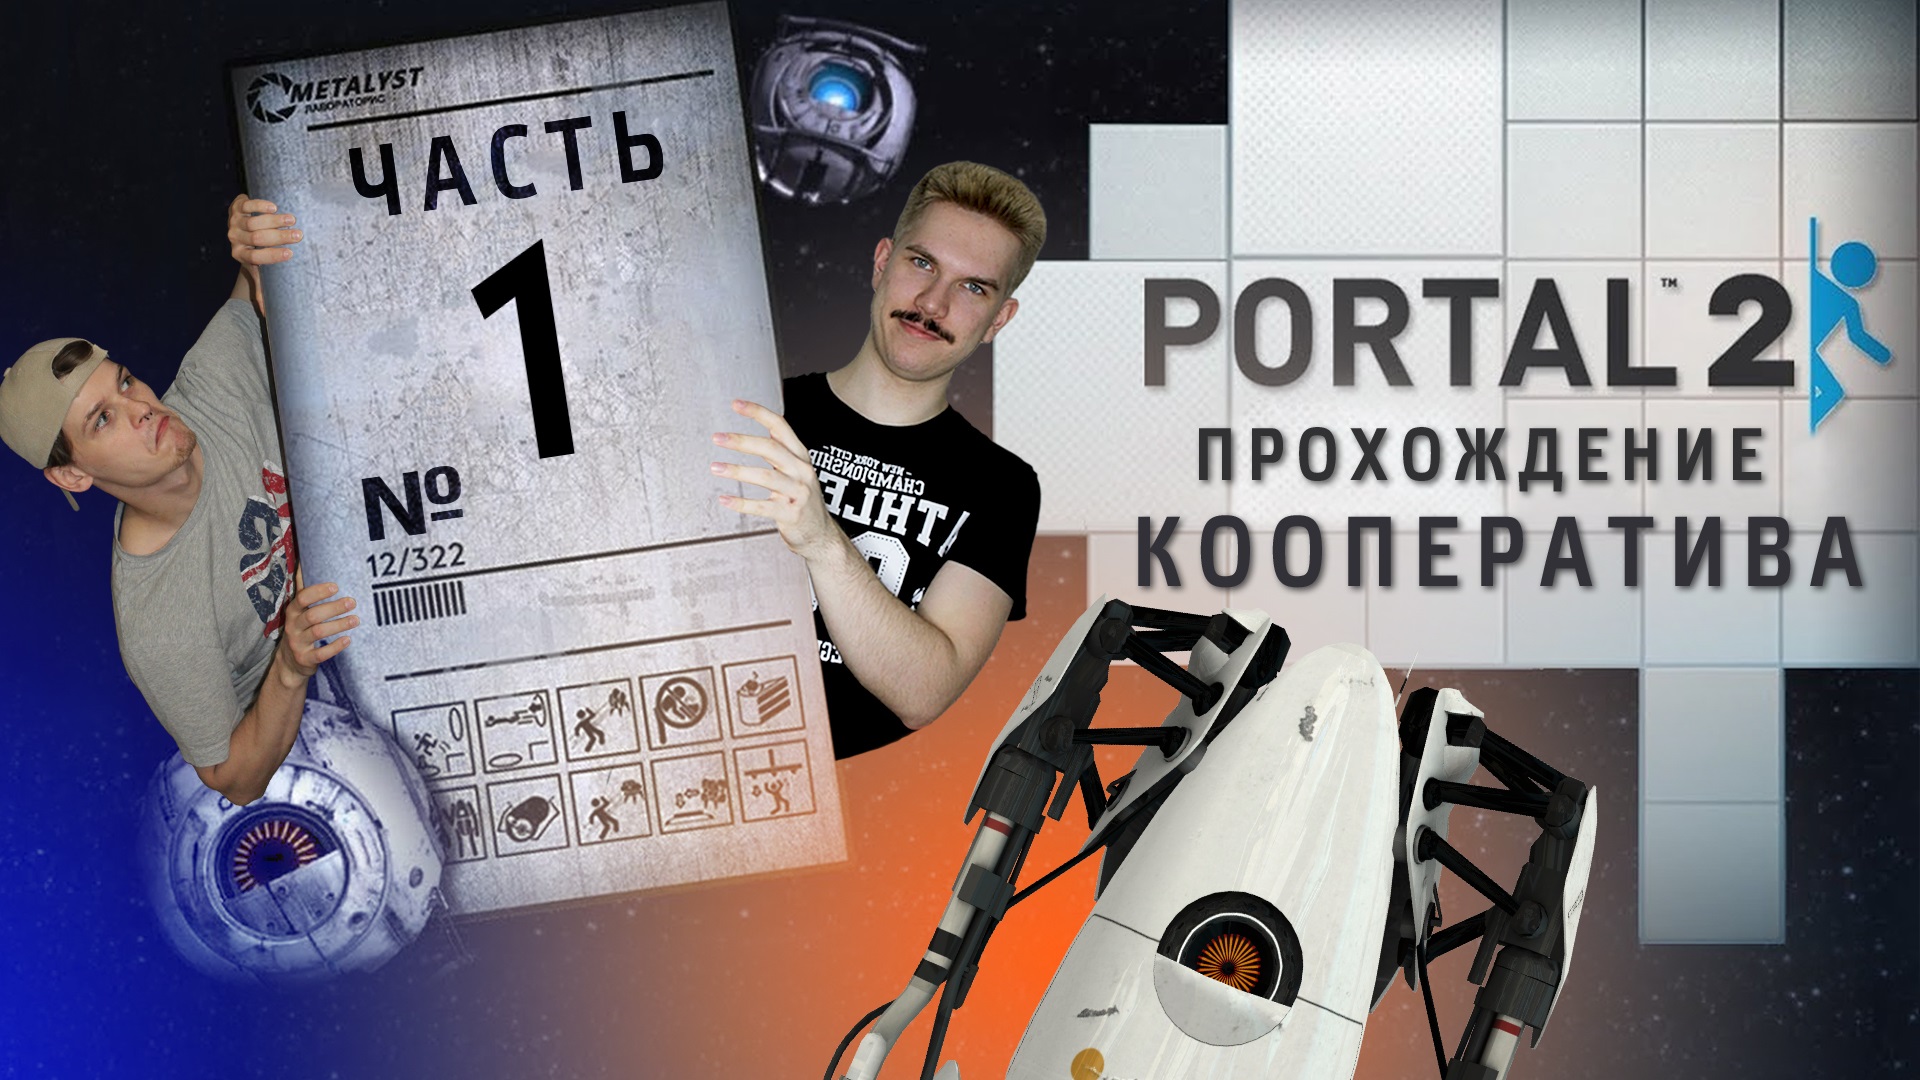 Portal 2 кооператив как пройти фото 34